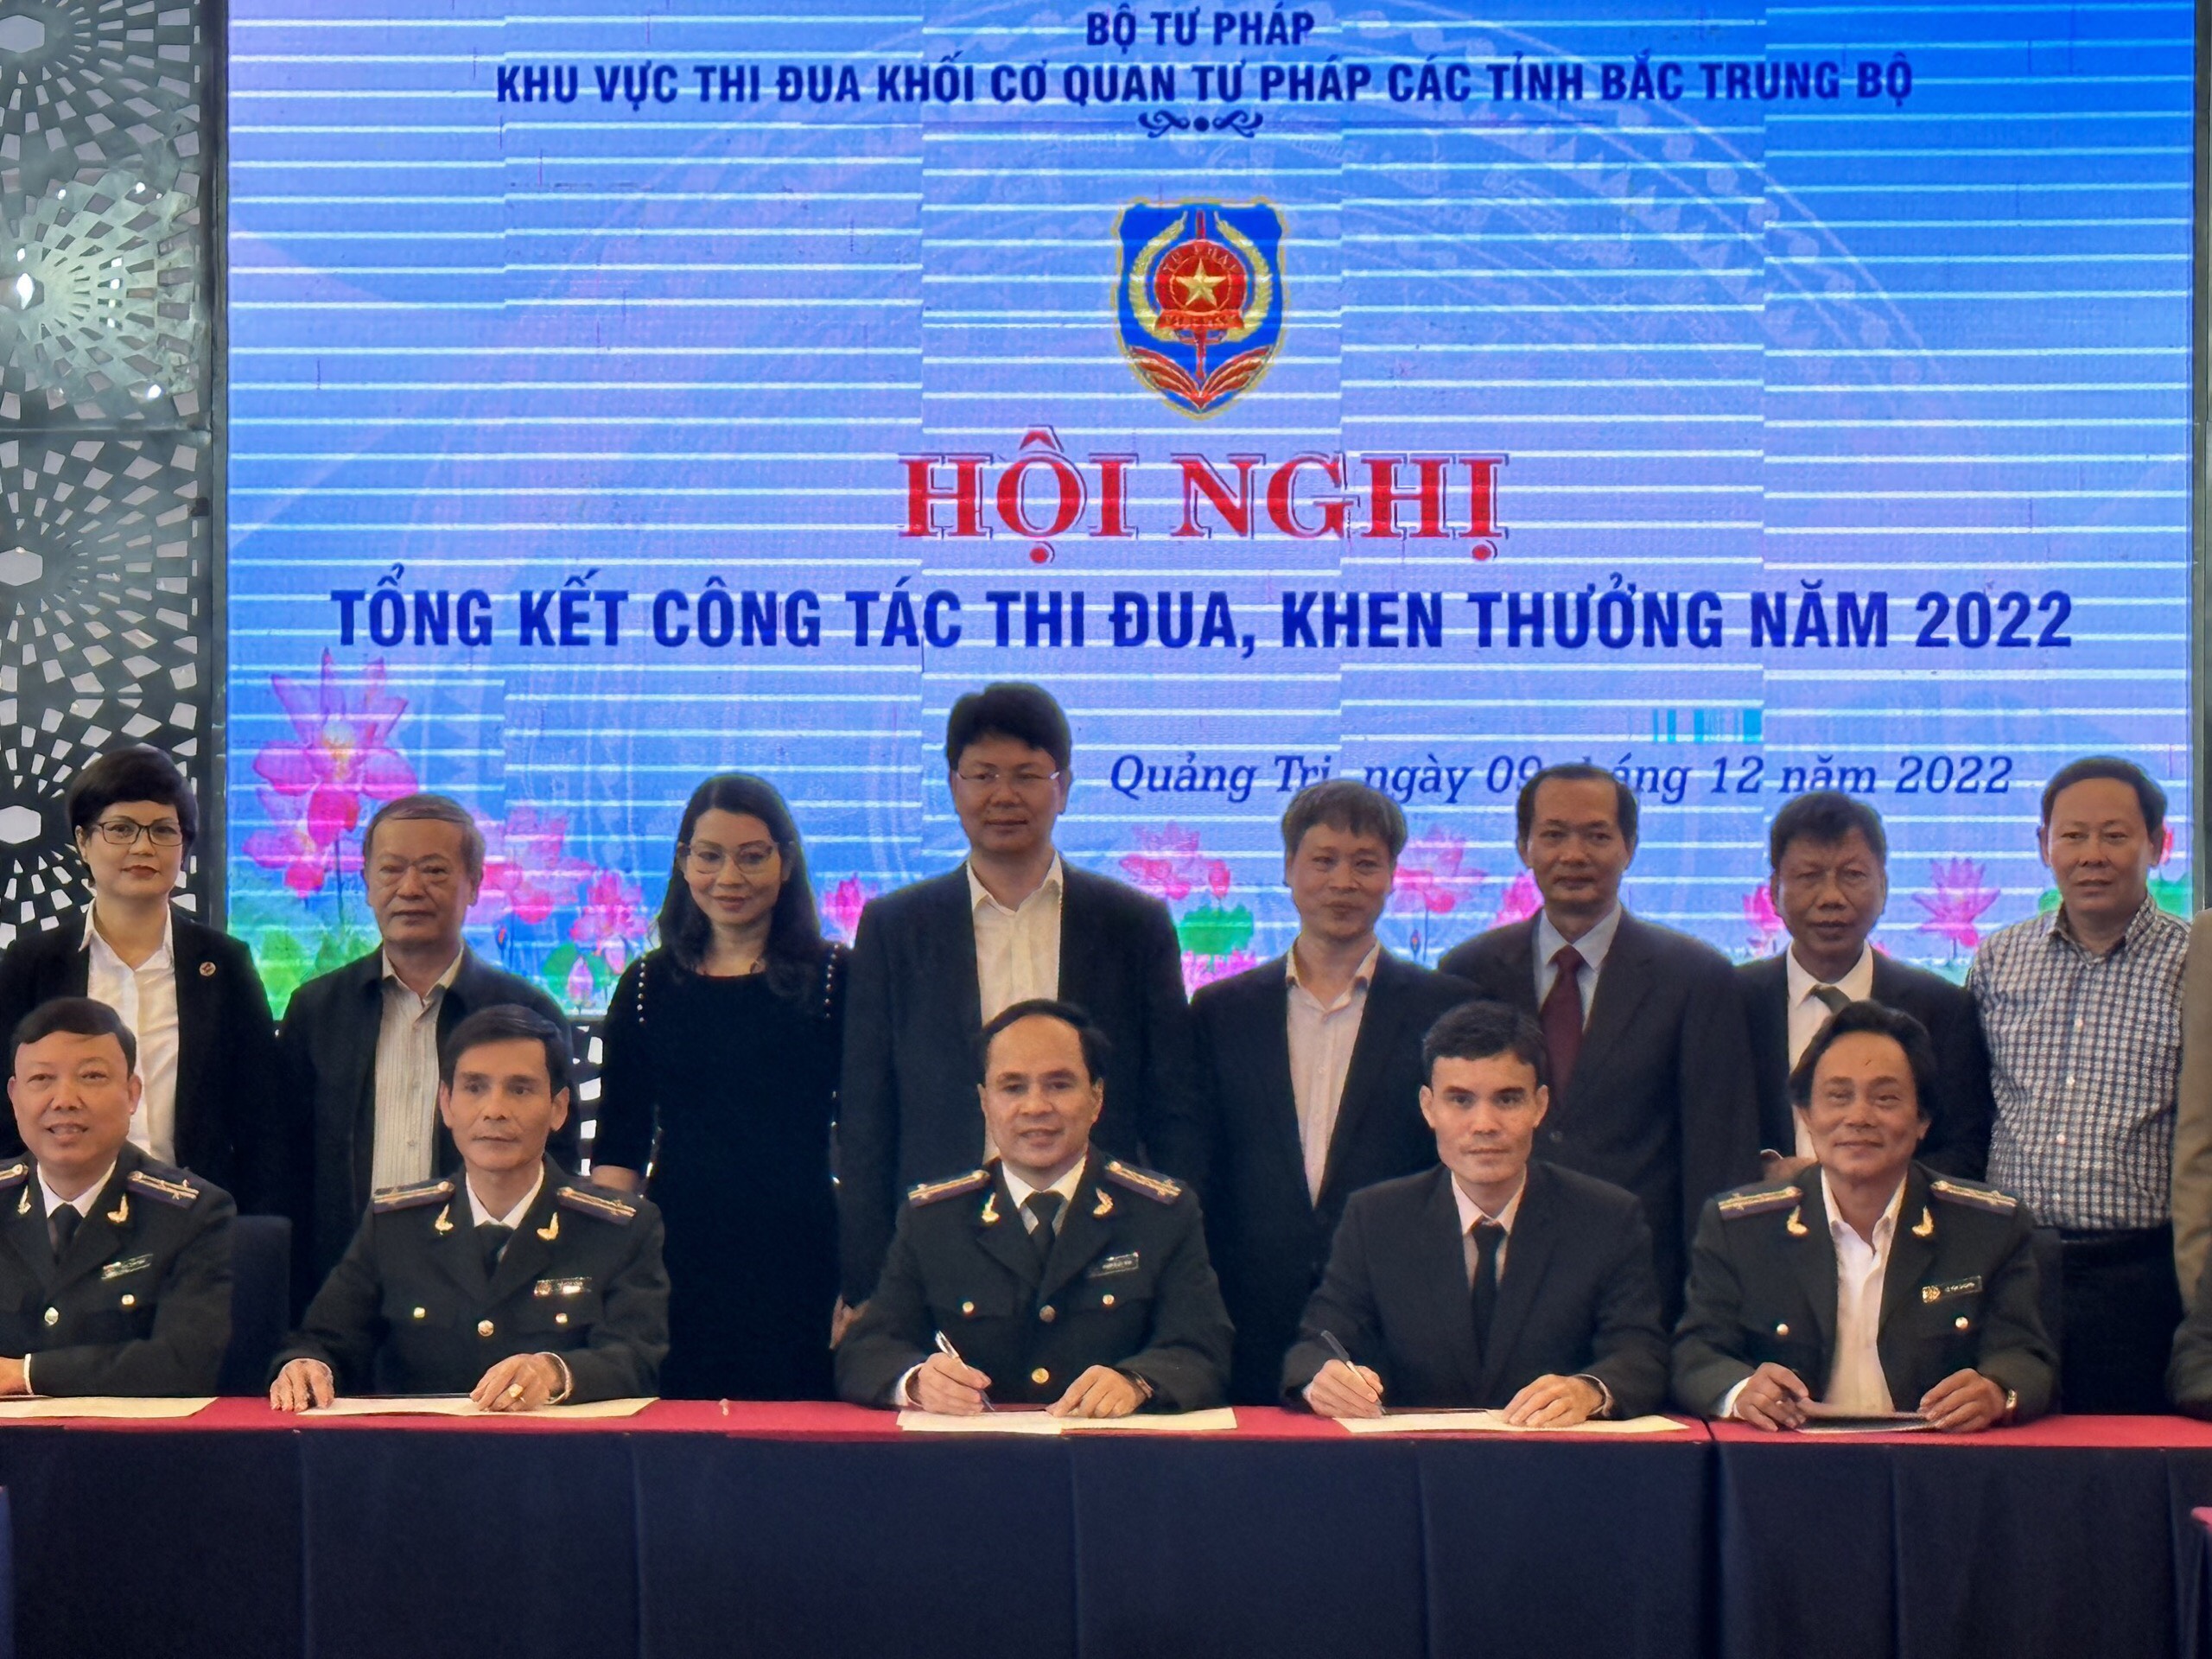 Cục THADS tỉnh Quảng Ngãi tiếp nhận nhiệm vụ Phó trưởng Khu vực thi đua Khối cơ quan Tư pháp các tỉnh Bắc Trung Bộ năm 2023